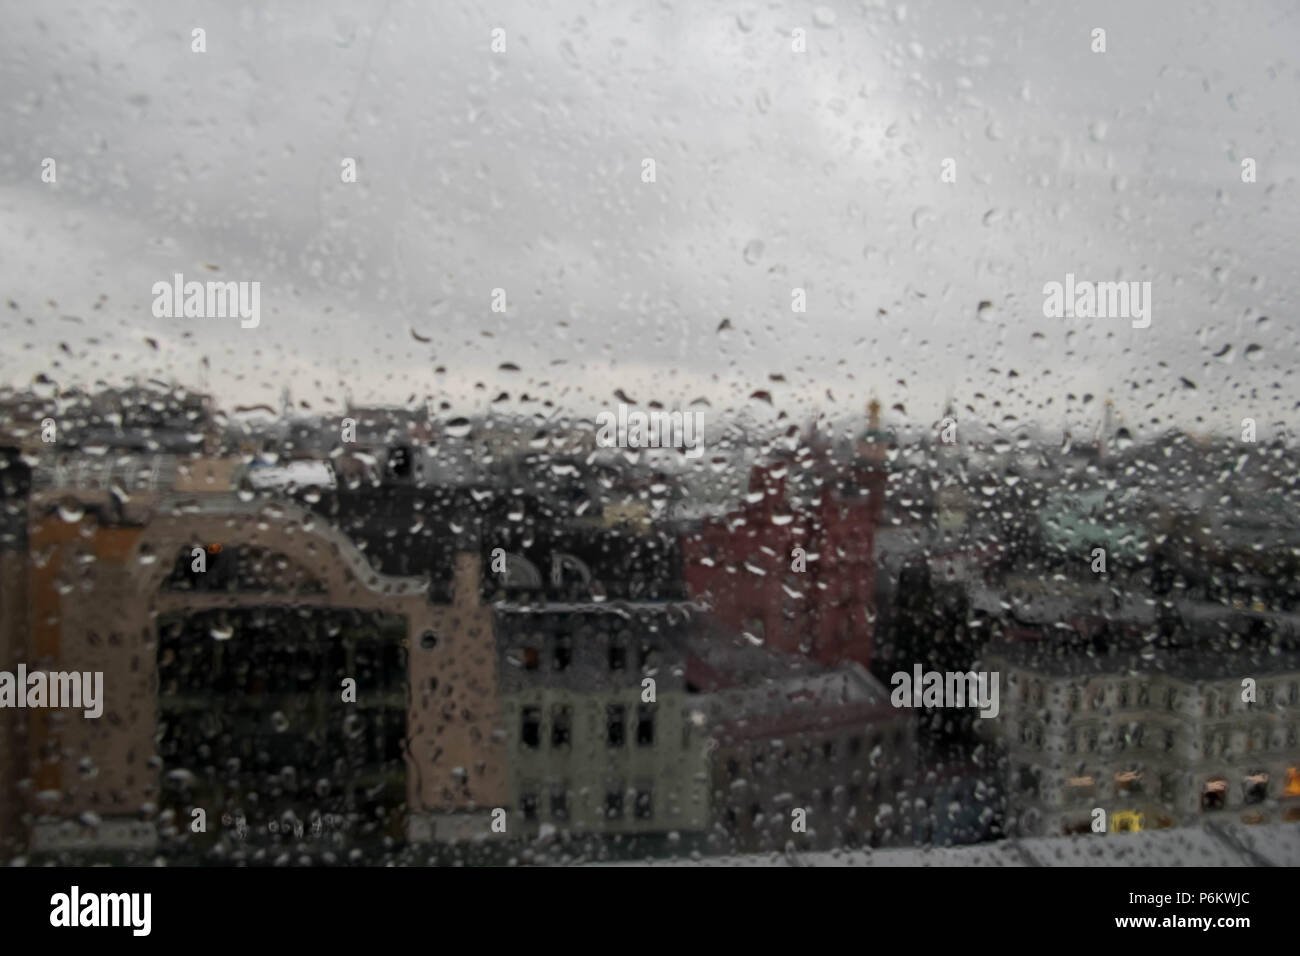 gotas-de-agua-en-la-ventana-la-abstraccion-gotas-de-lluvia-en-una-ventana-con-vista-a-la-ciudad-en-el-fondo-p6kwjc.jpg